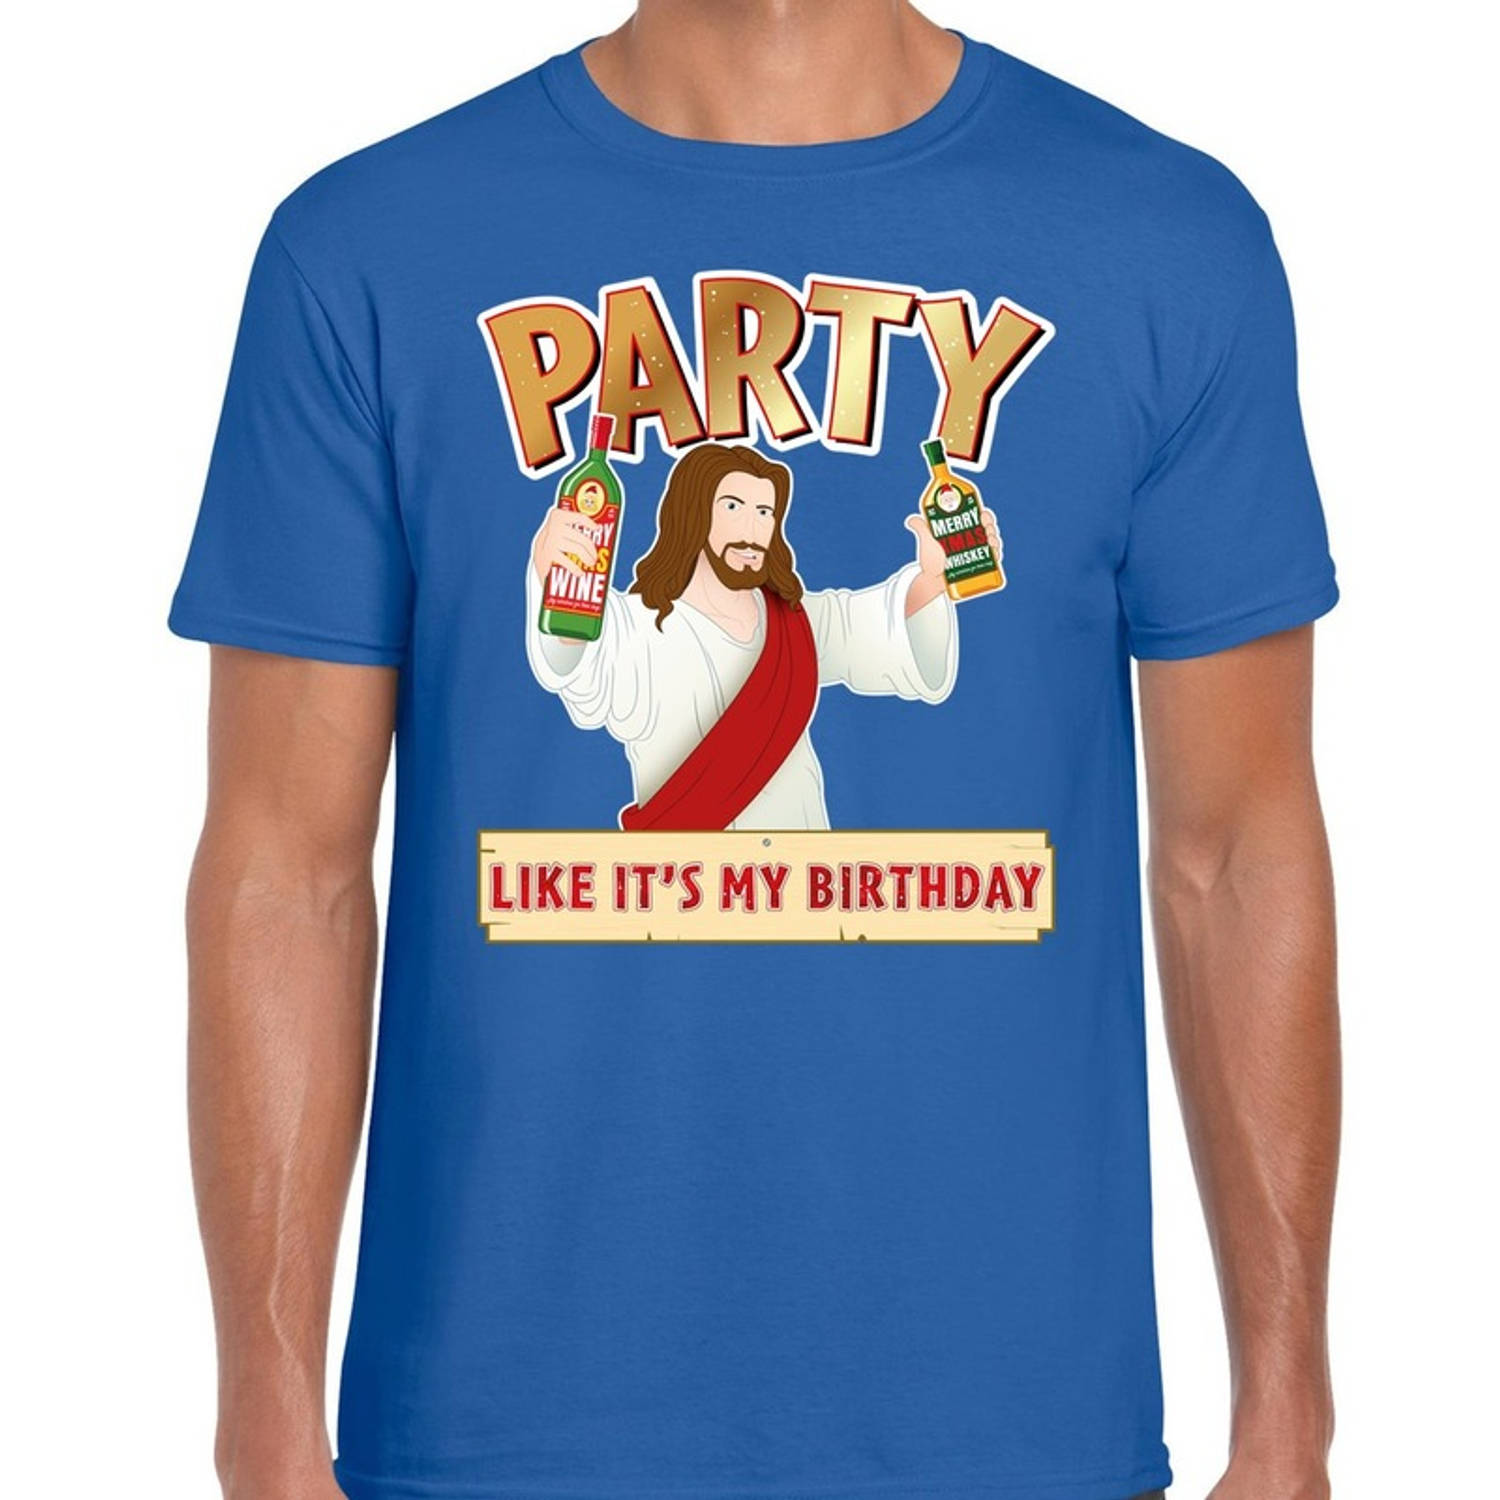 Blauw kerstshirt / kerstkleding met party Jezus voor heren M - kerst t-shirts